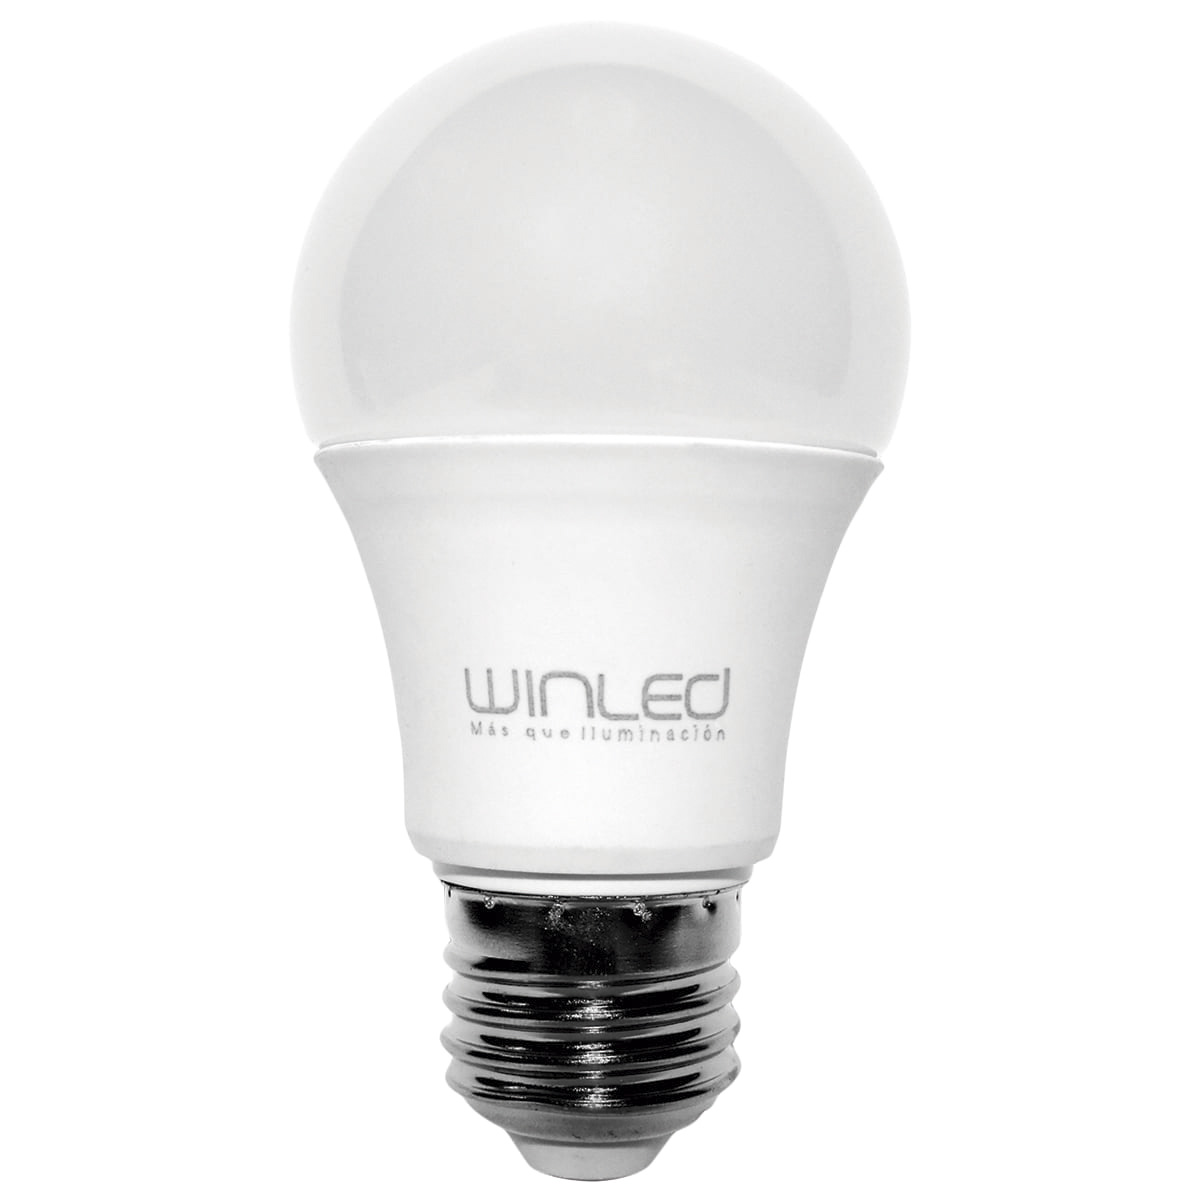 WLA-008 FOCO LED BULBO E26 5W BLANCO CÁLIDO | Innlite MX - Iluminación LED, Luminarias LED, Proyectos de Iluminación